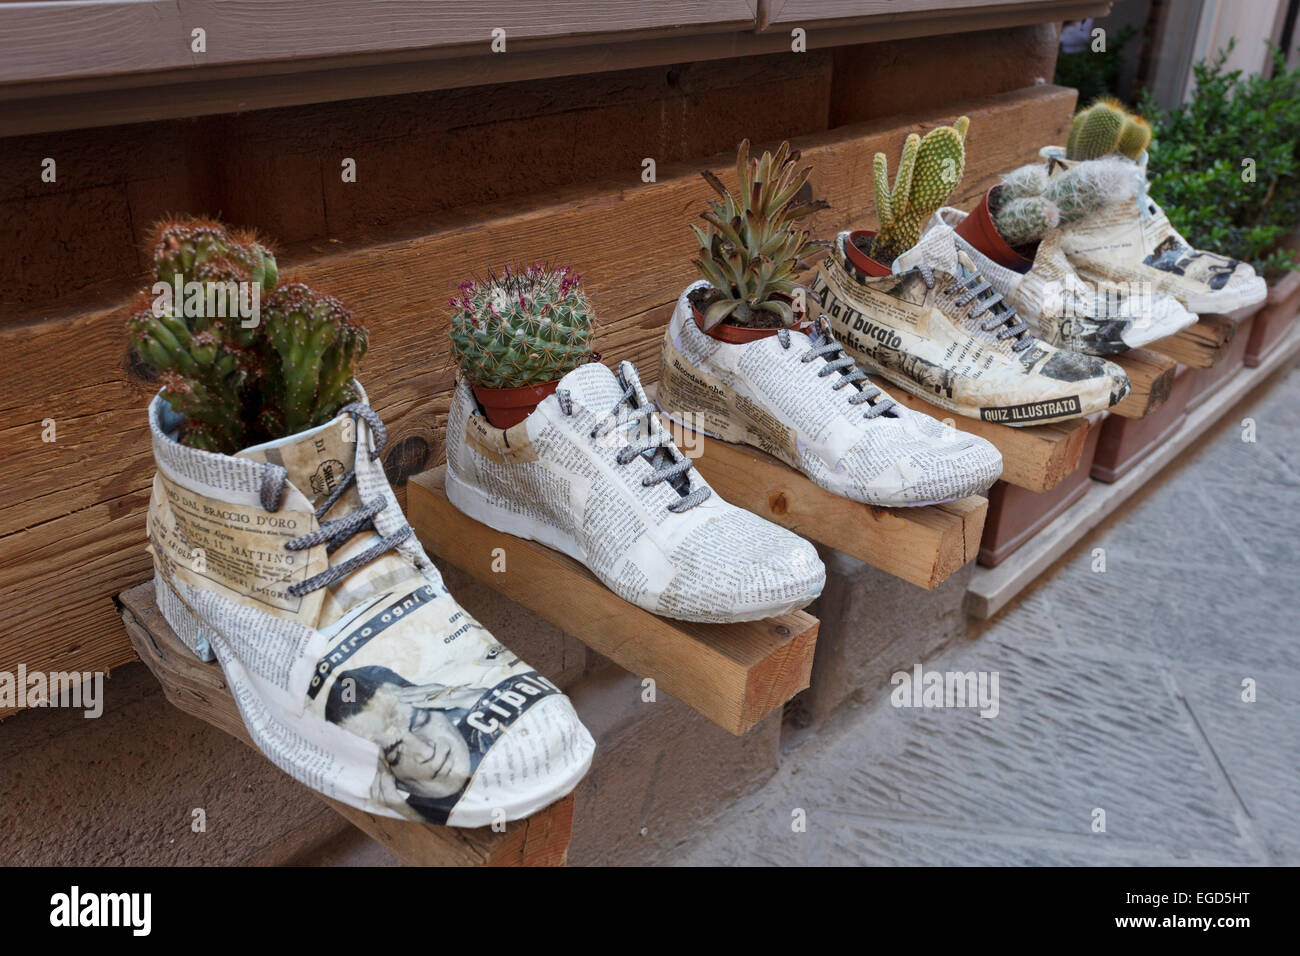 Shoe shopping italy immagini e fotografie stock ad alta risoluzione - Alamy